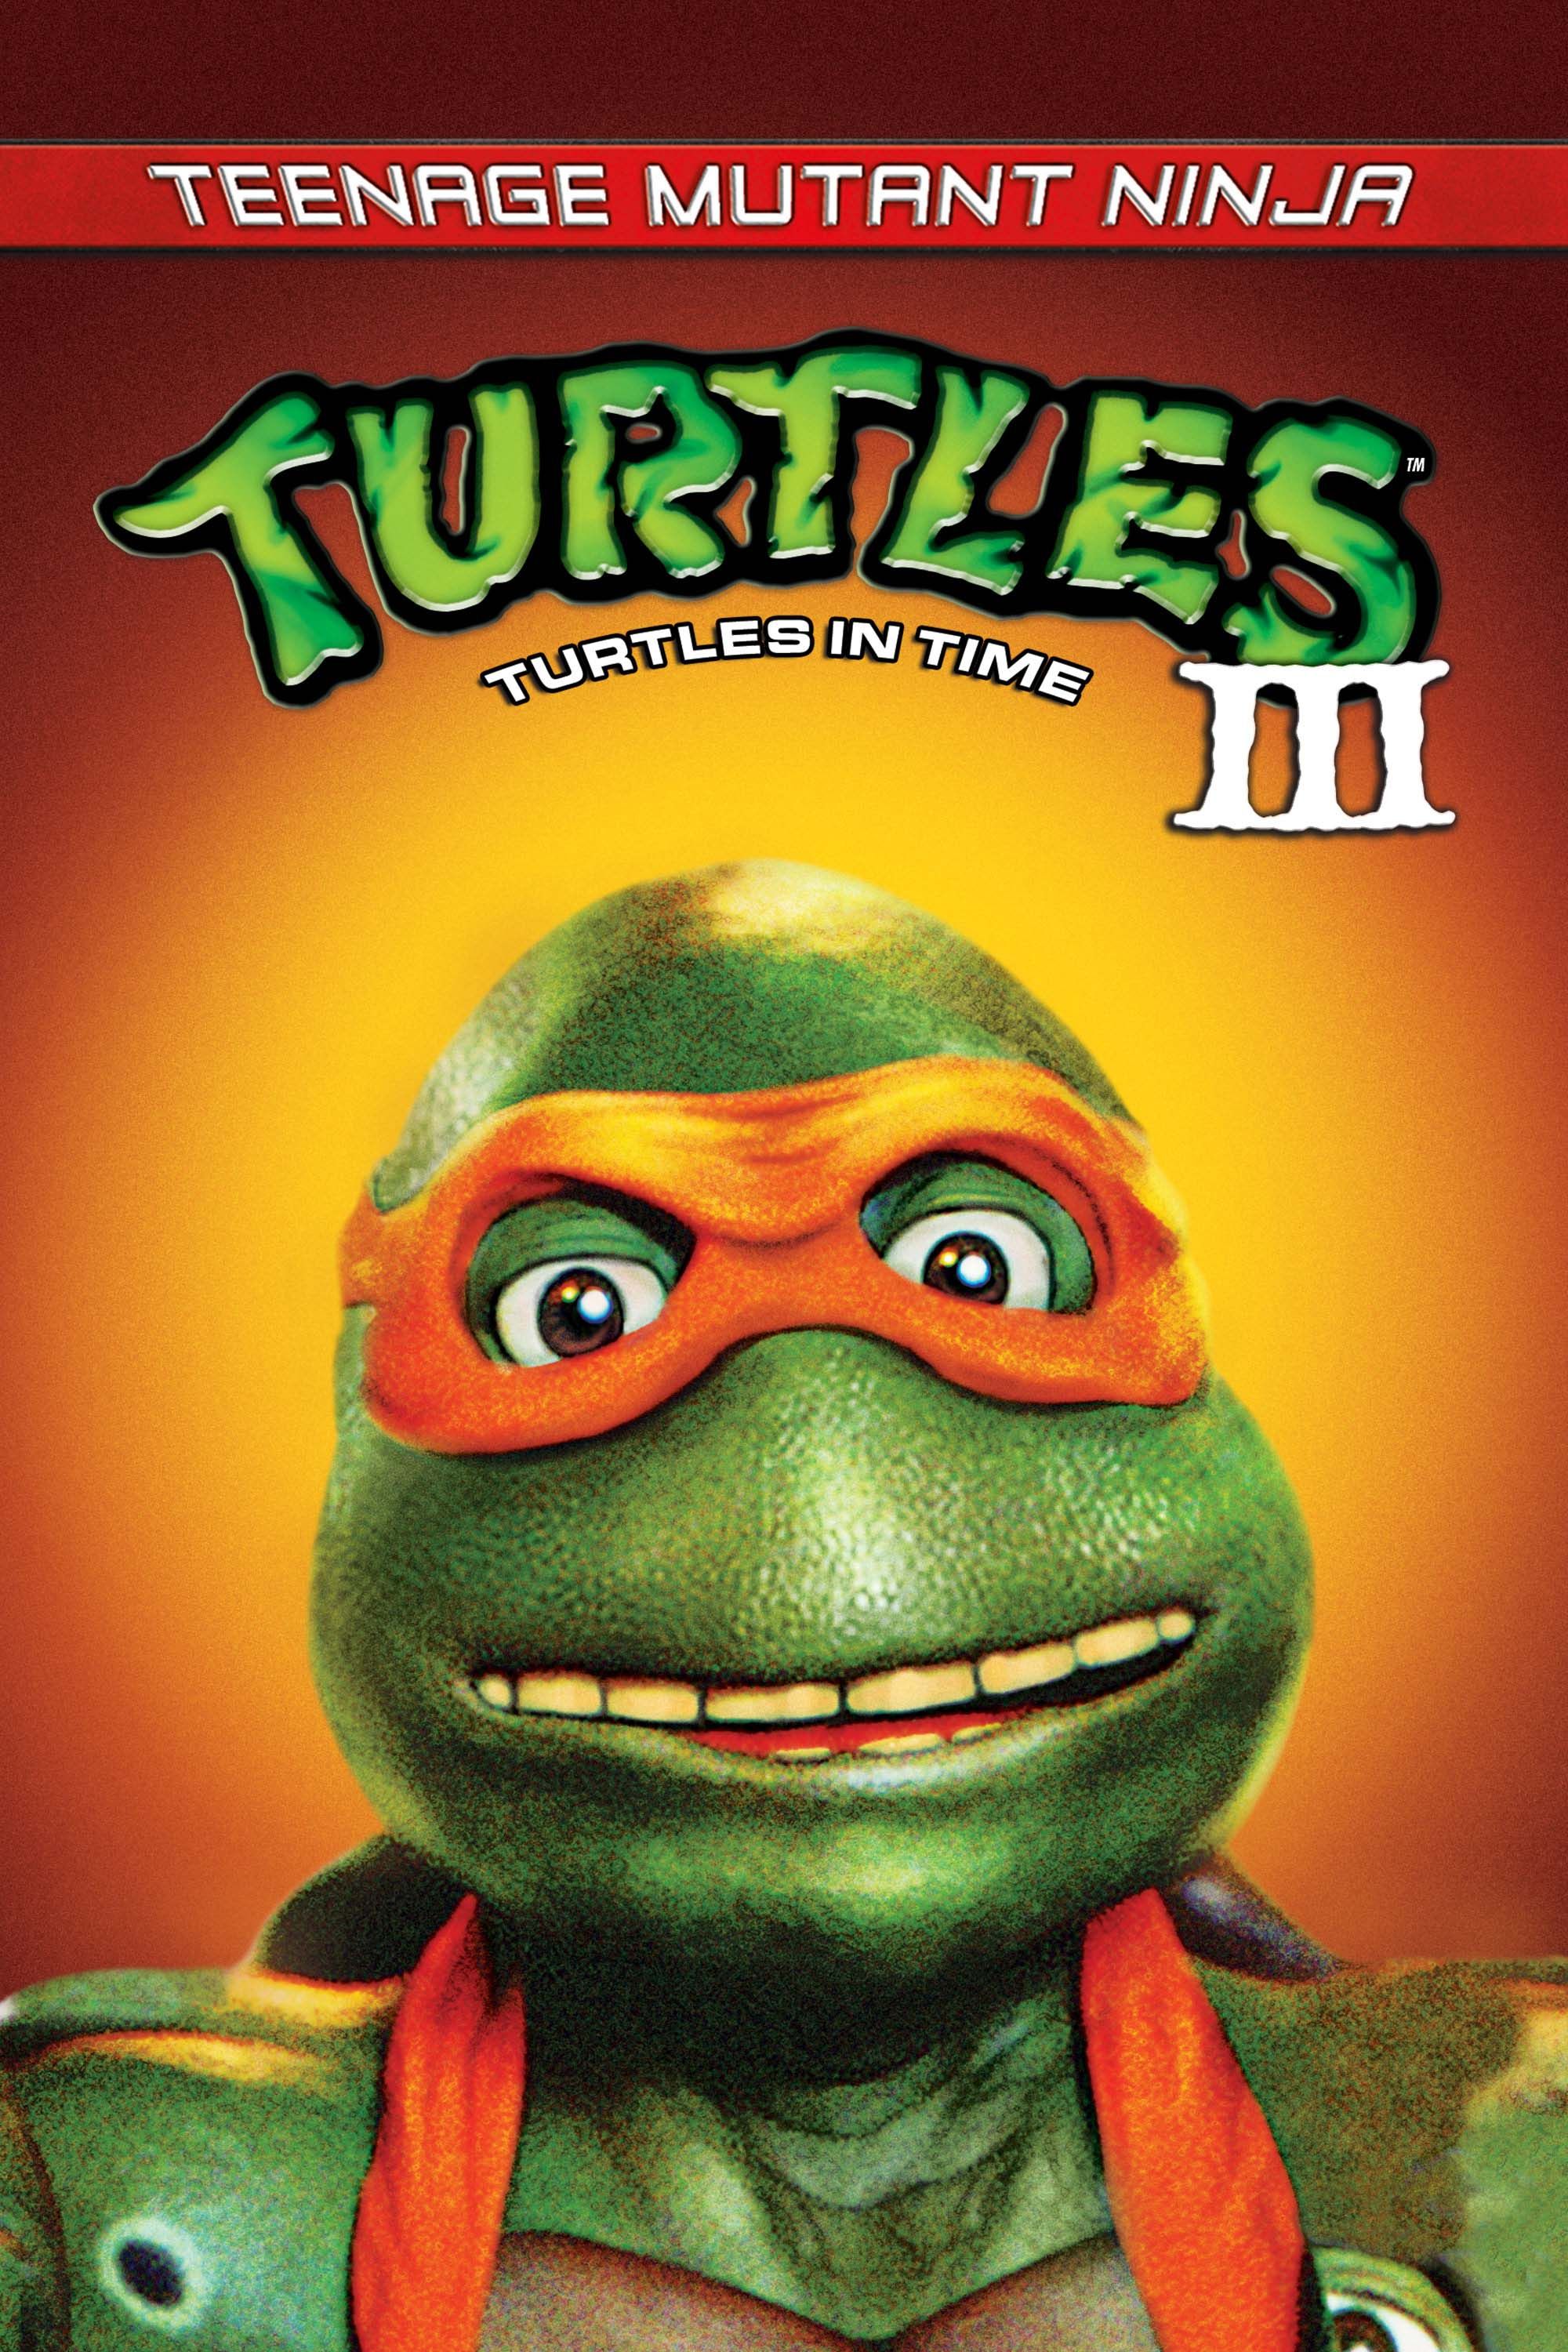 Teenage Mutant Ninja Turtles 3, Full Movie